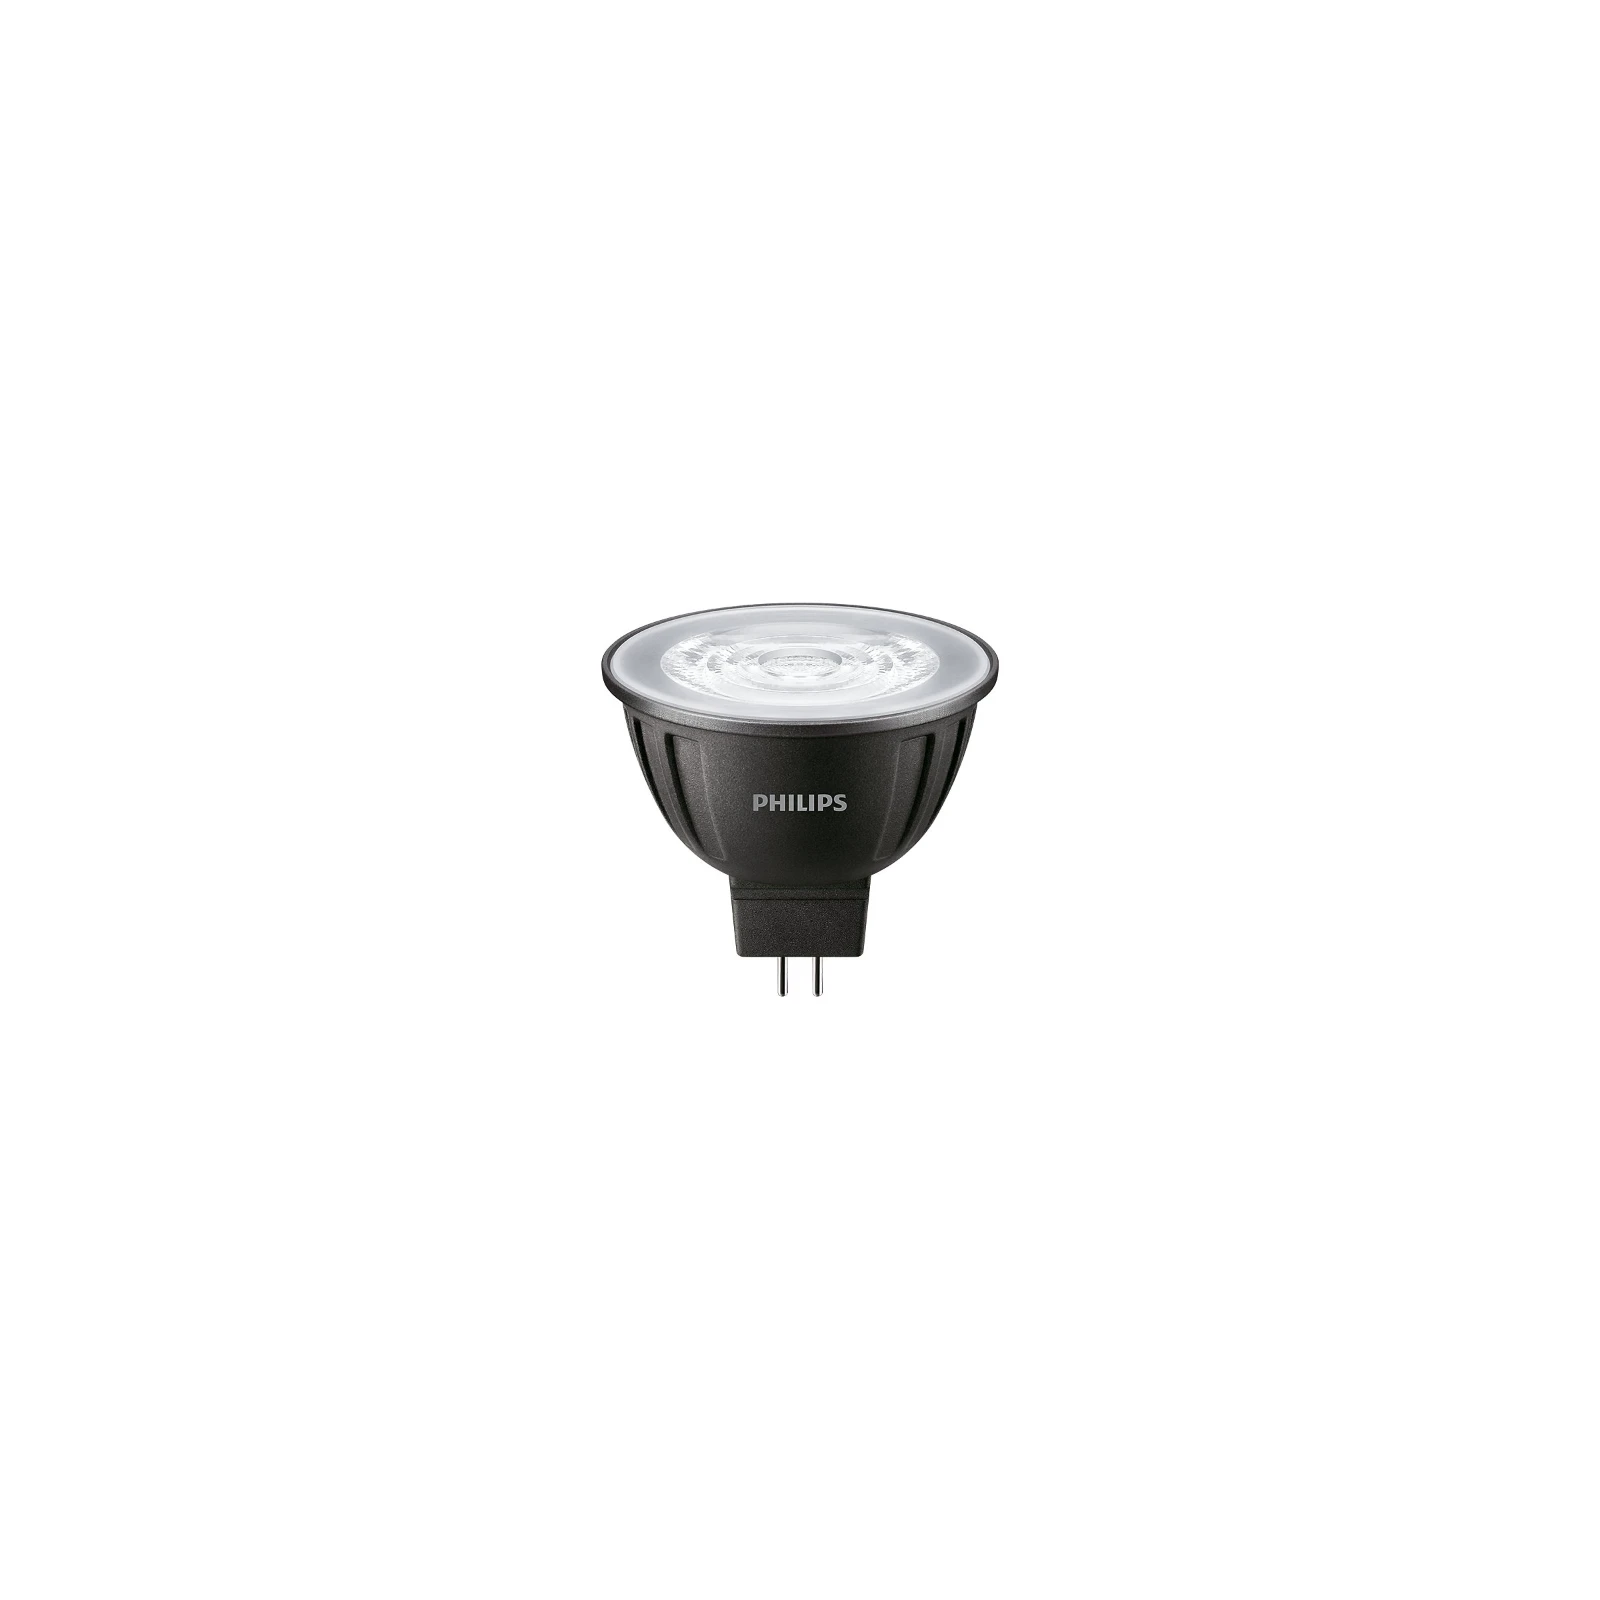 Philips LED-lamp MAS LEDspotLV D 7.5-50W 930 MR16 36D